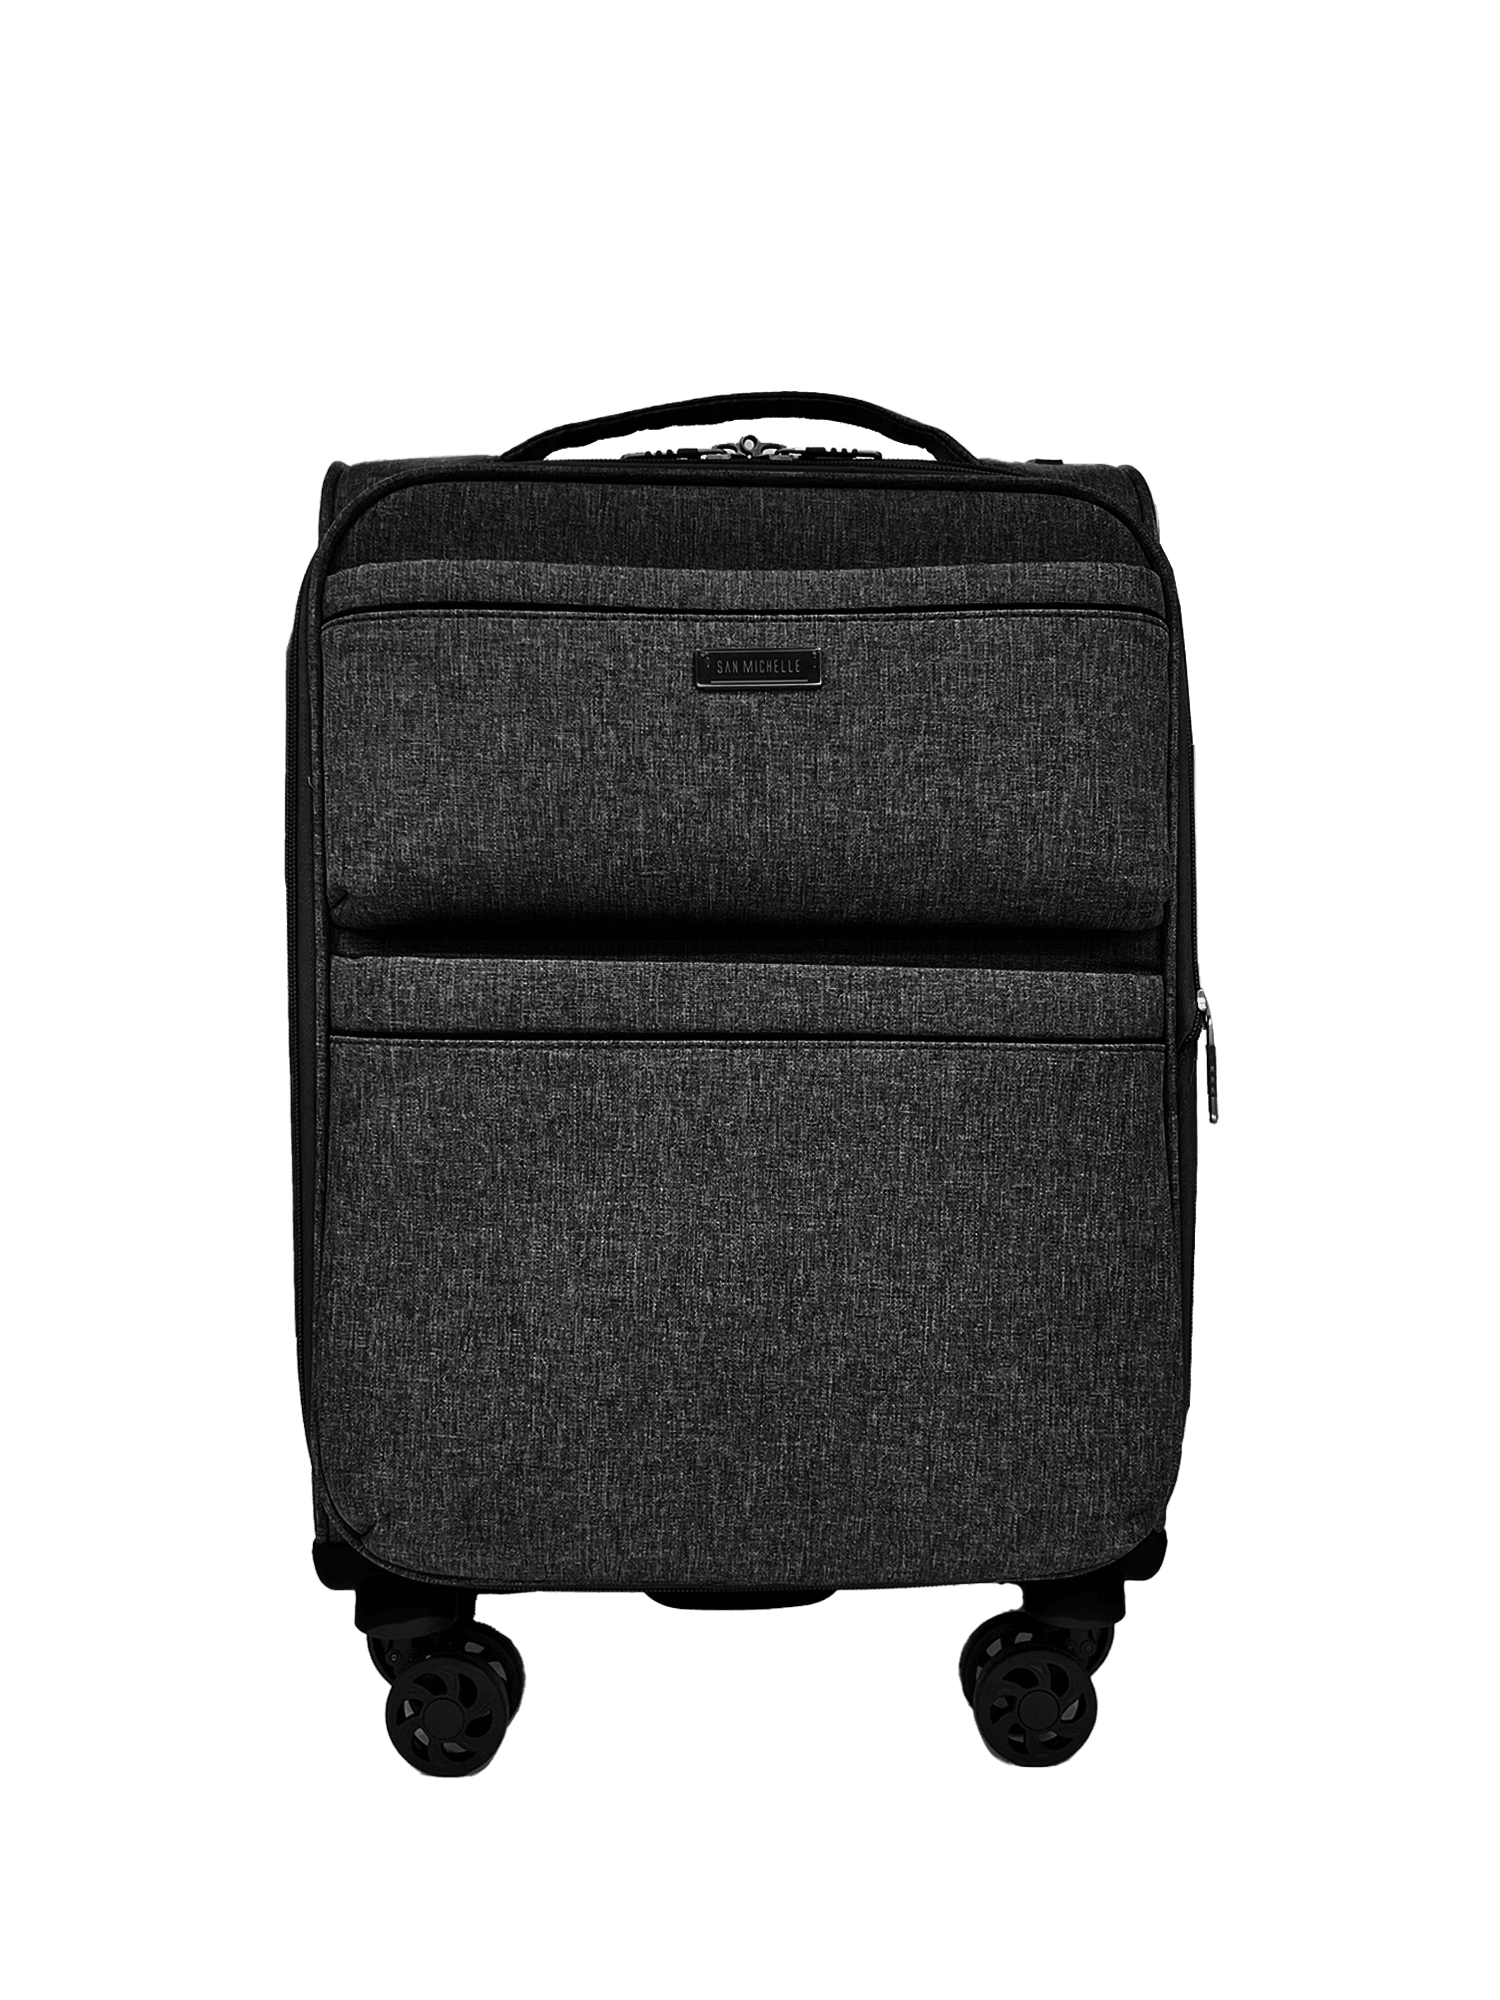 San Michelle Denim Carrier 55cm Suitcase - San Michelle Bags suitcase nz